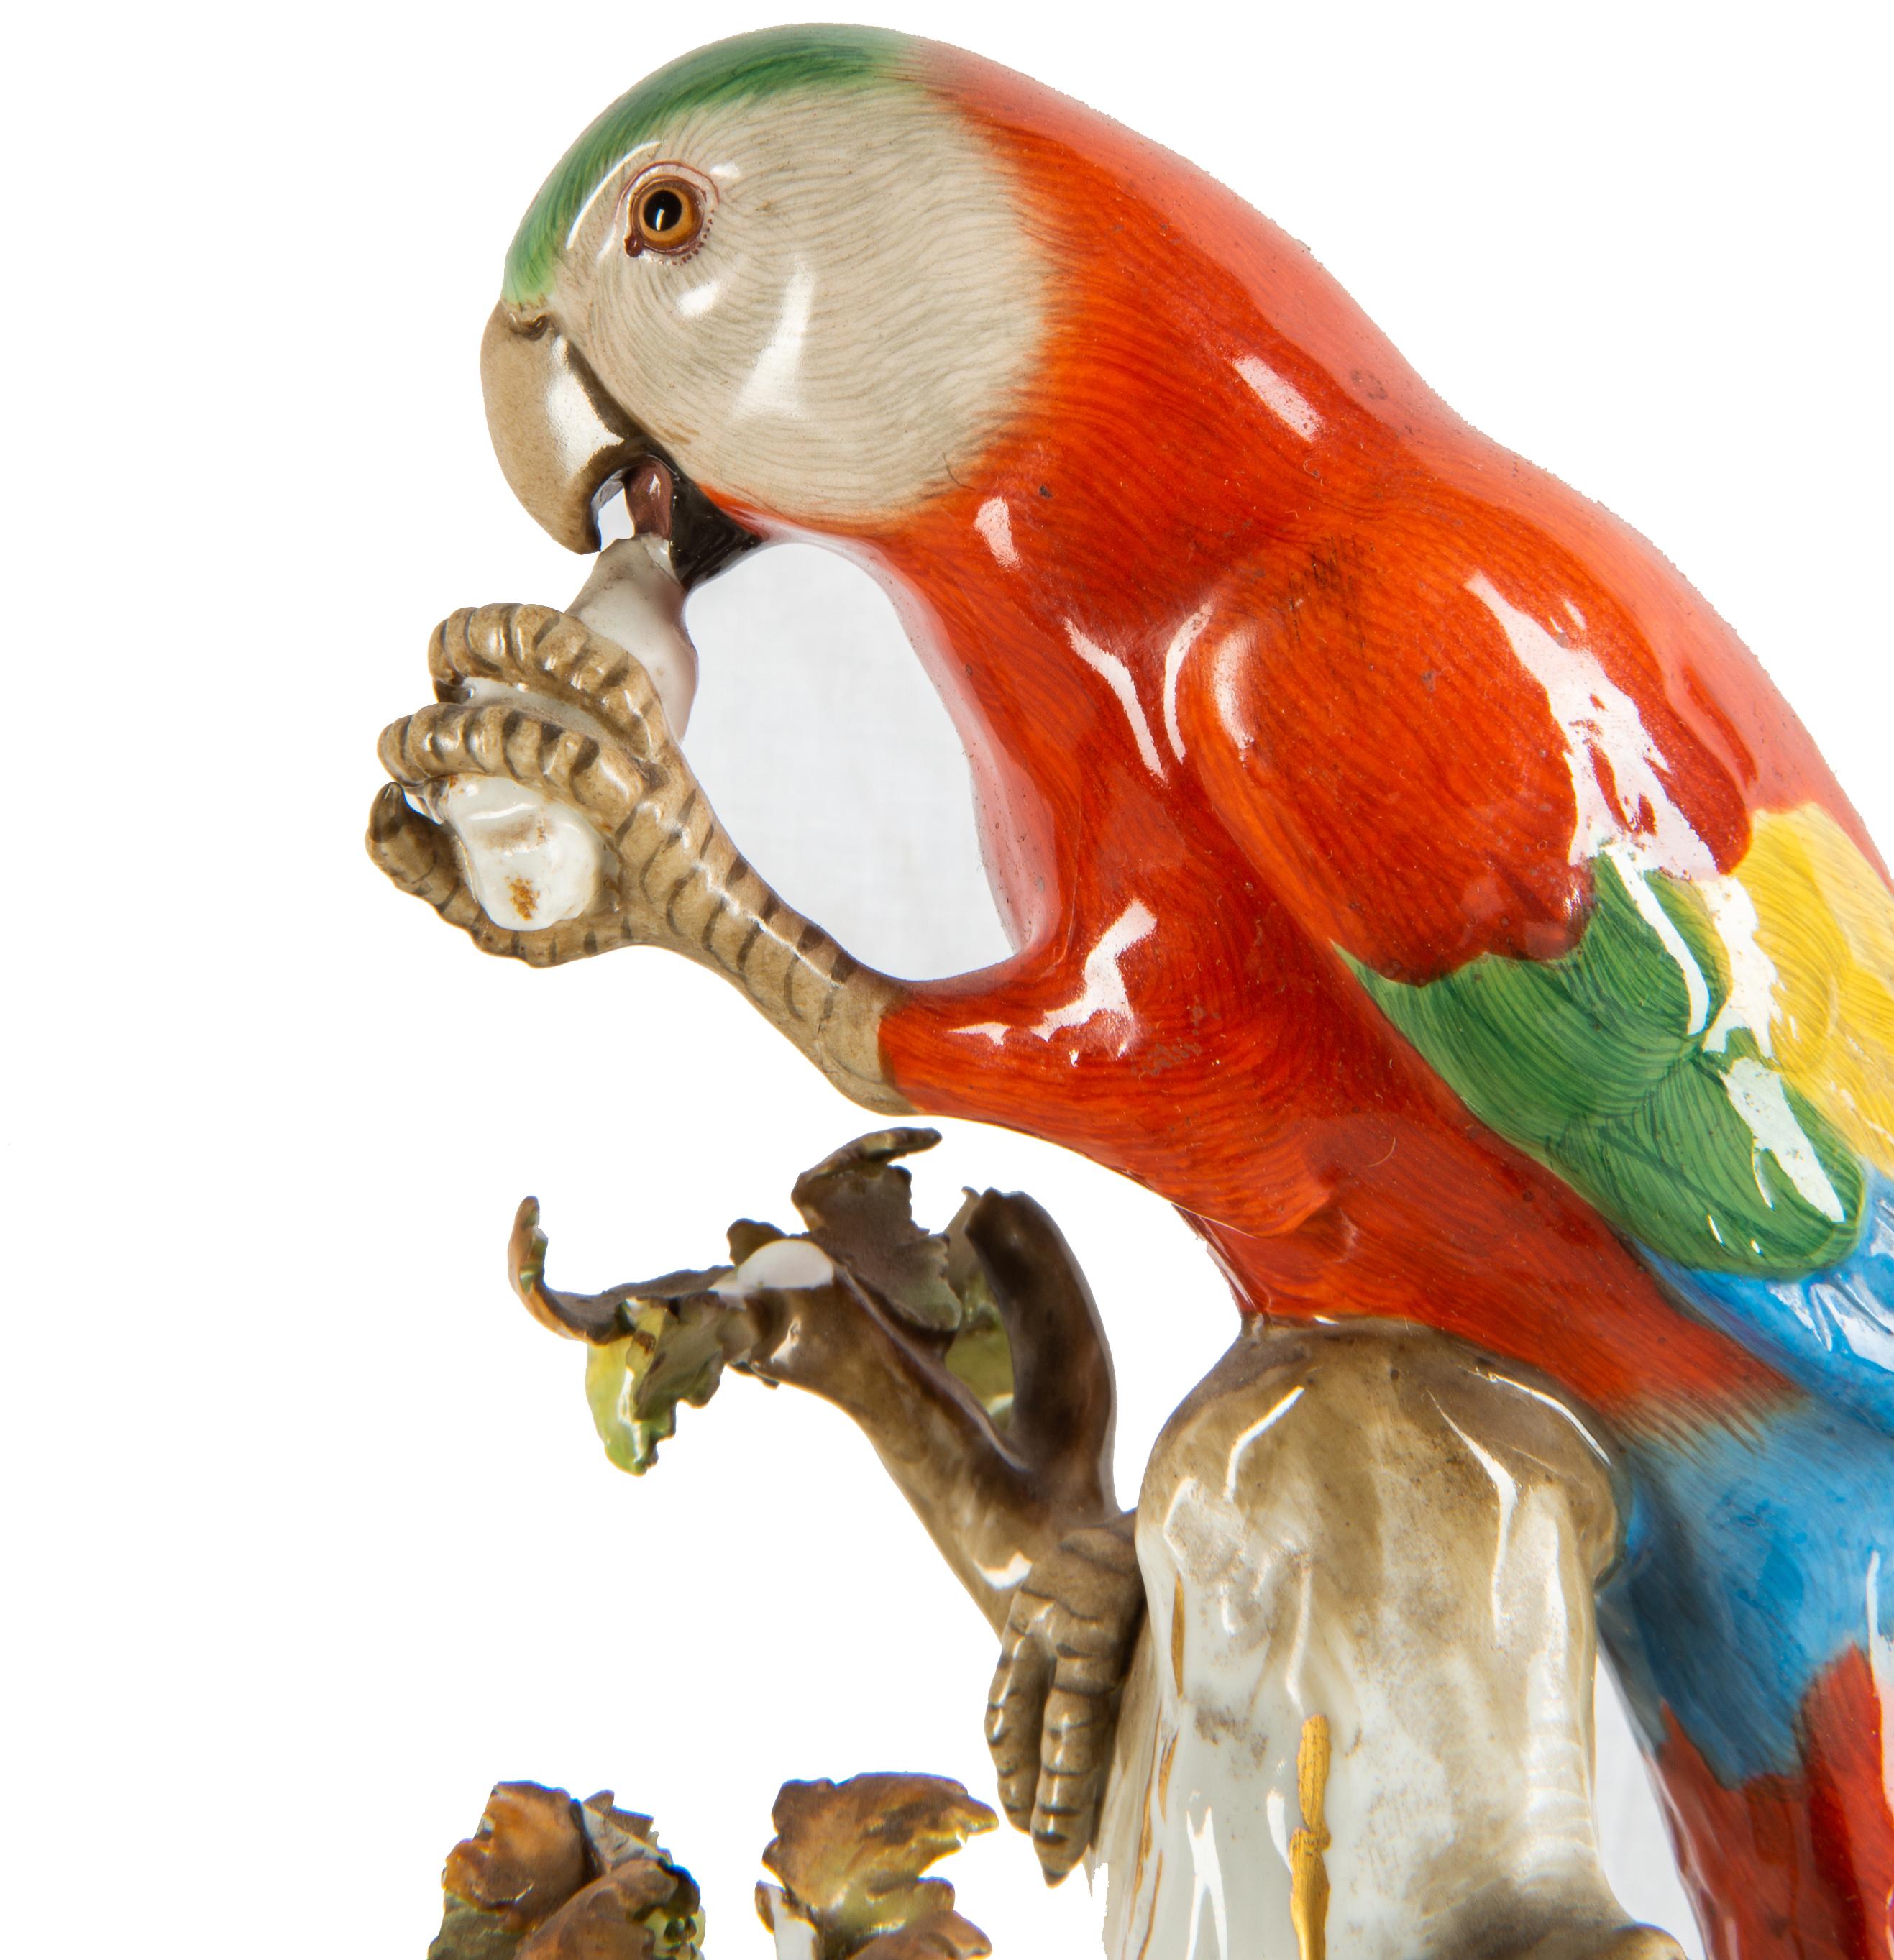 German 19th Century Meissen Porcelain Parrot